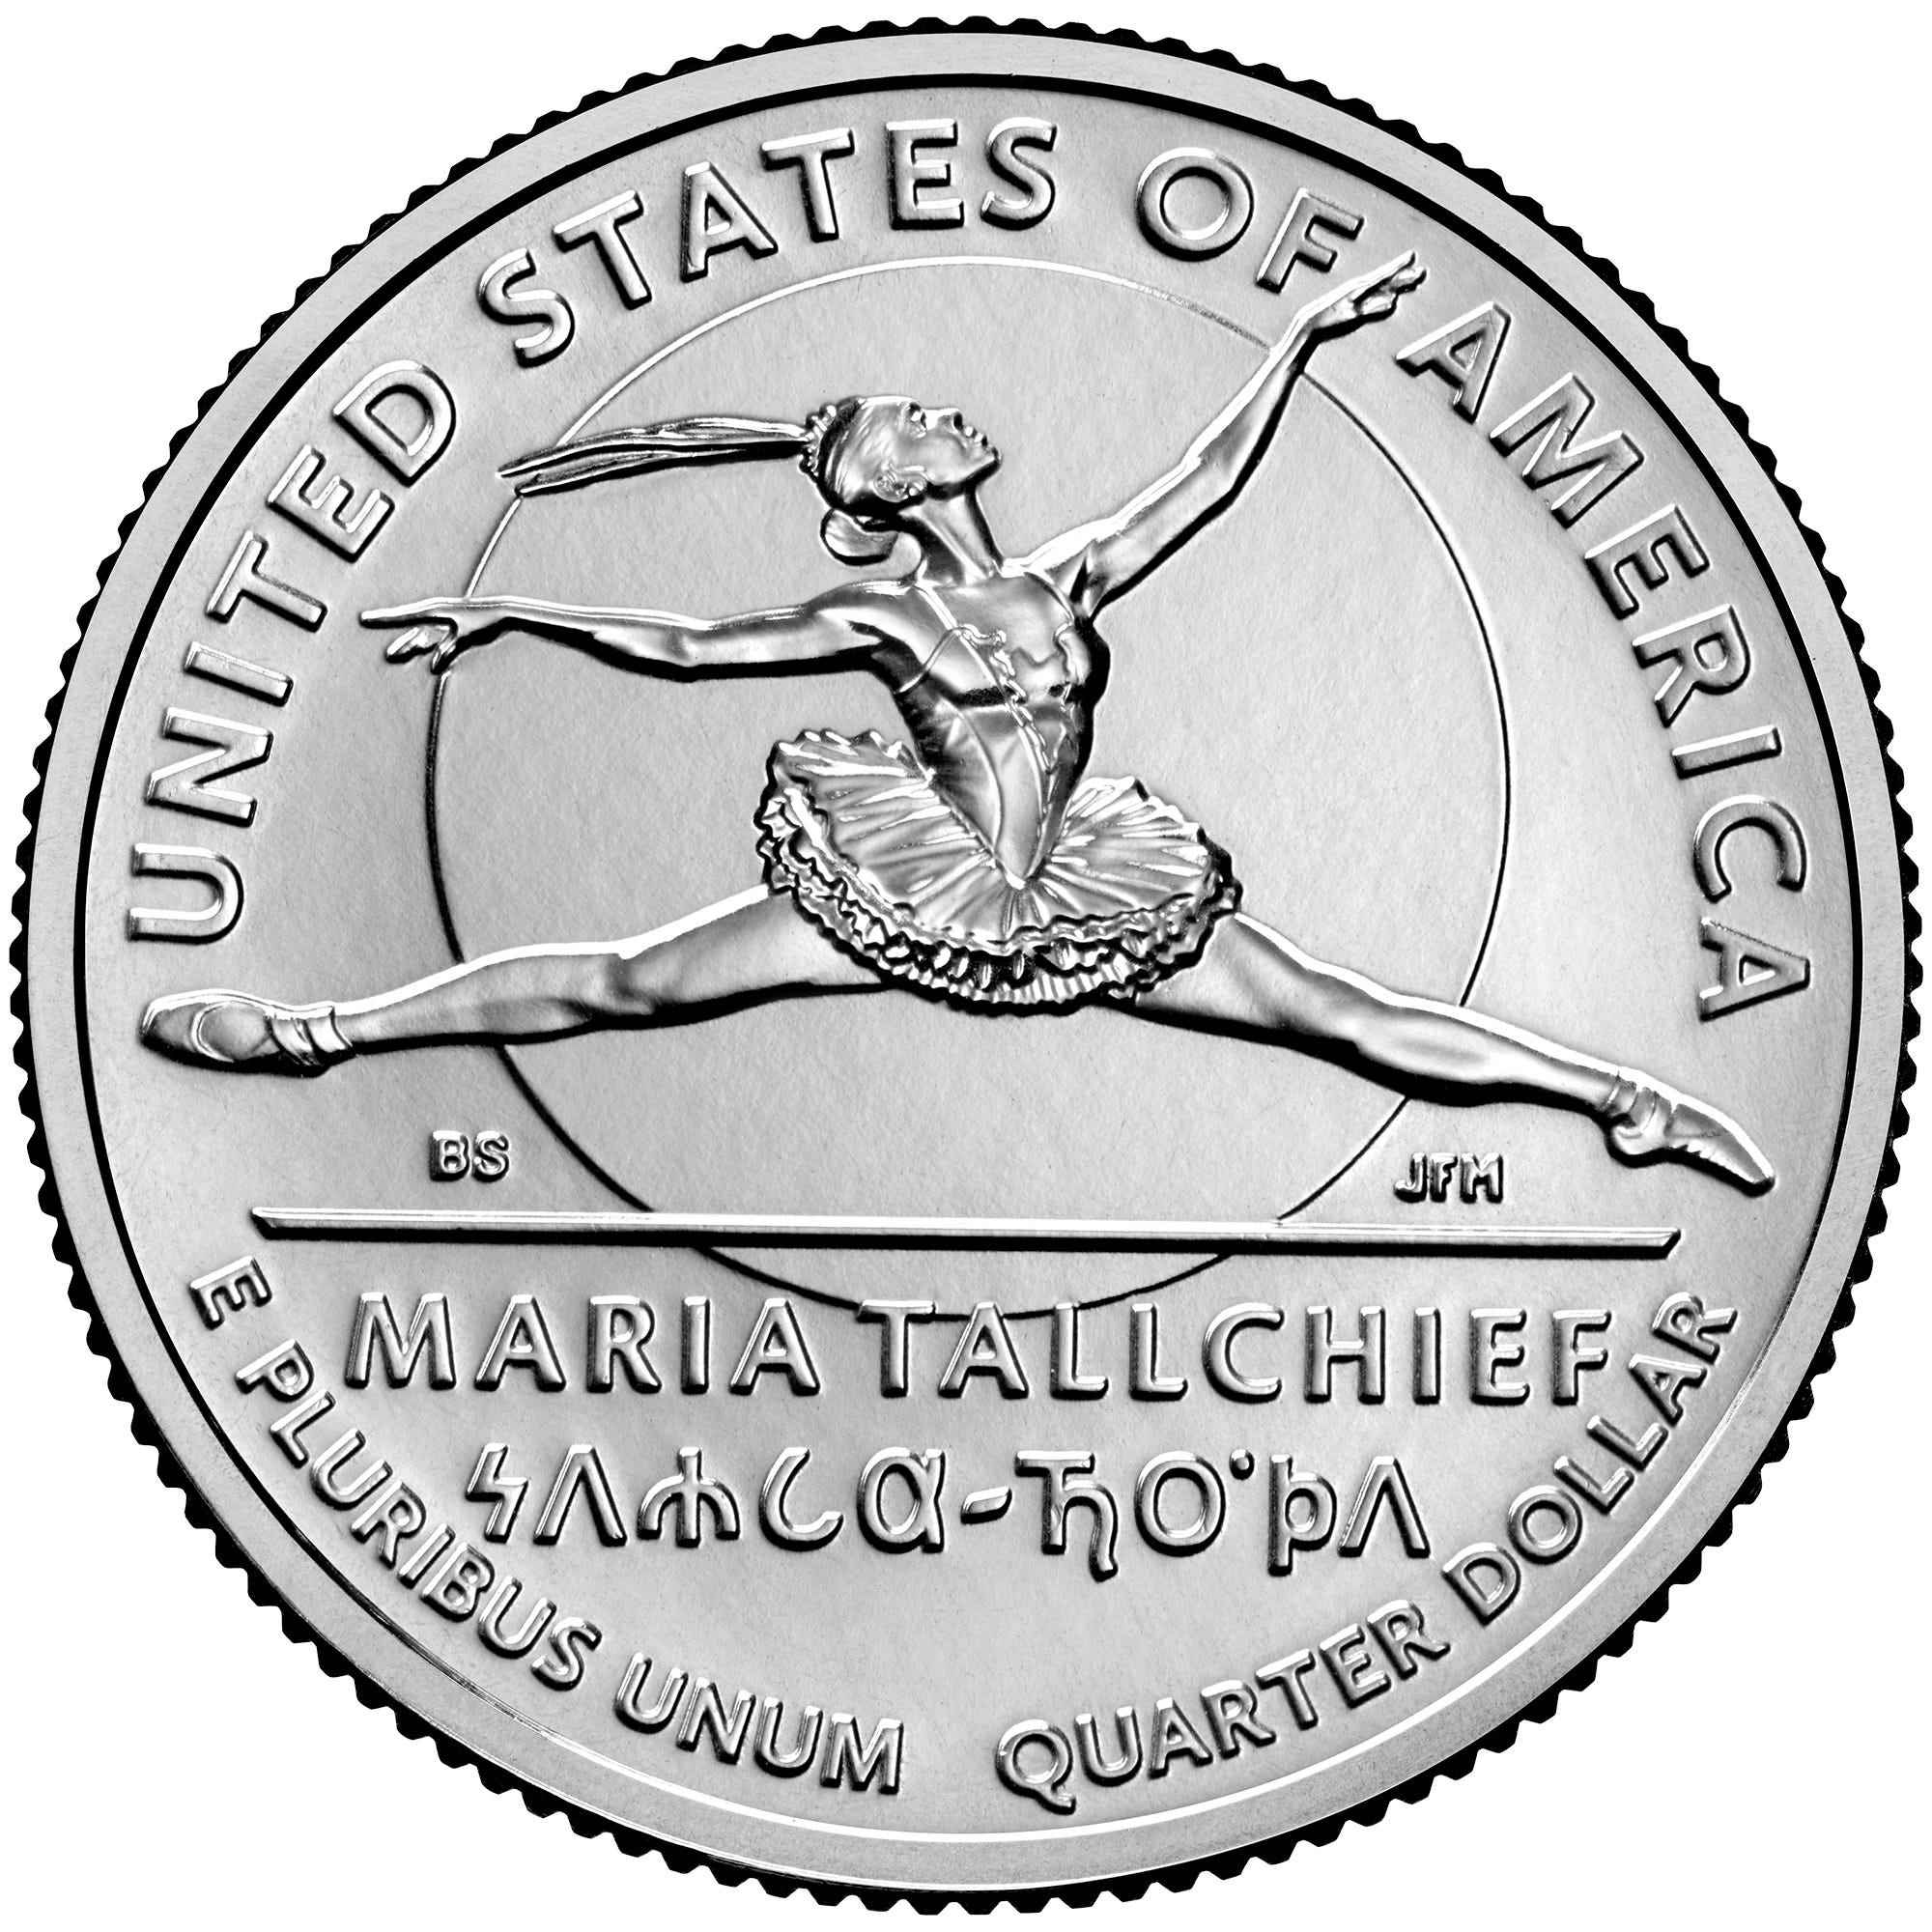 Münzbild der Vereinigten Staaten von der United States Mint